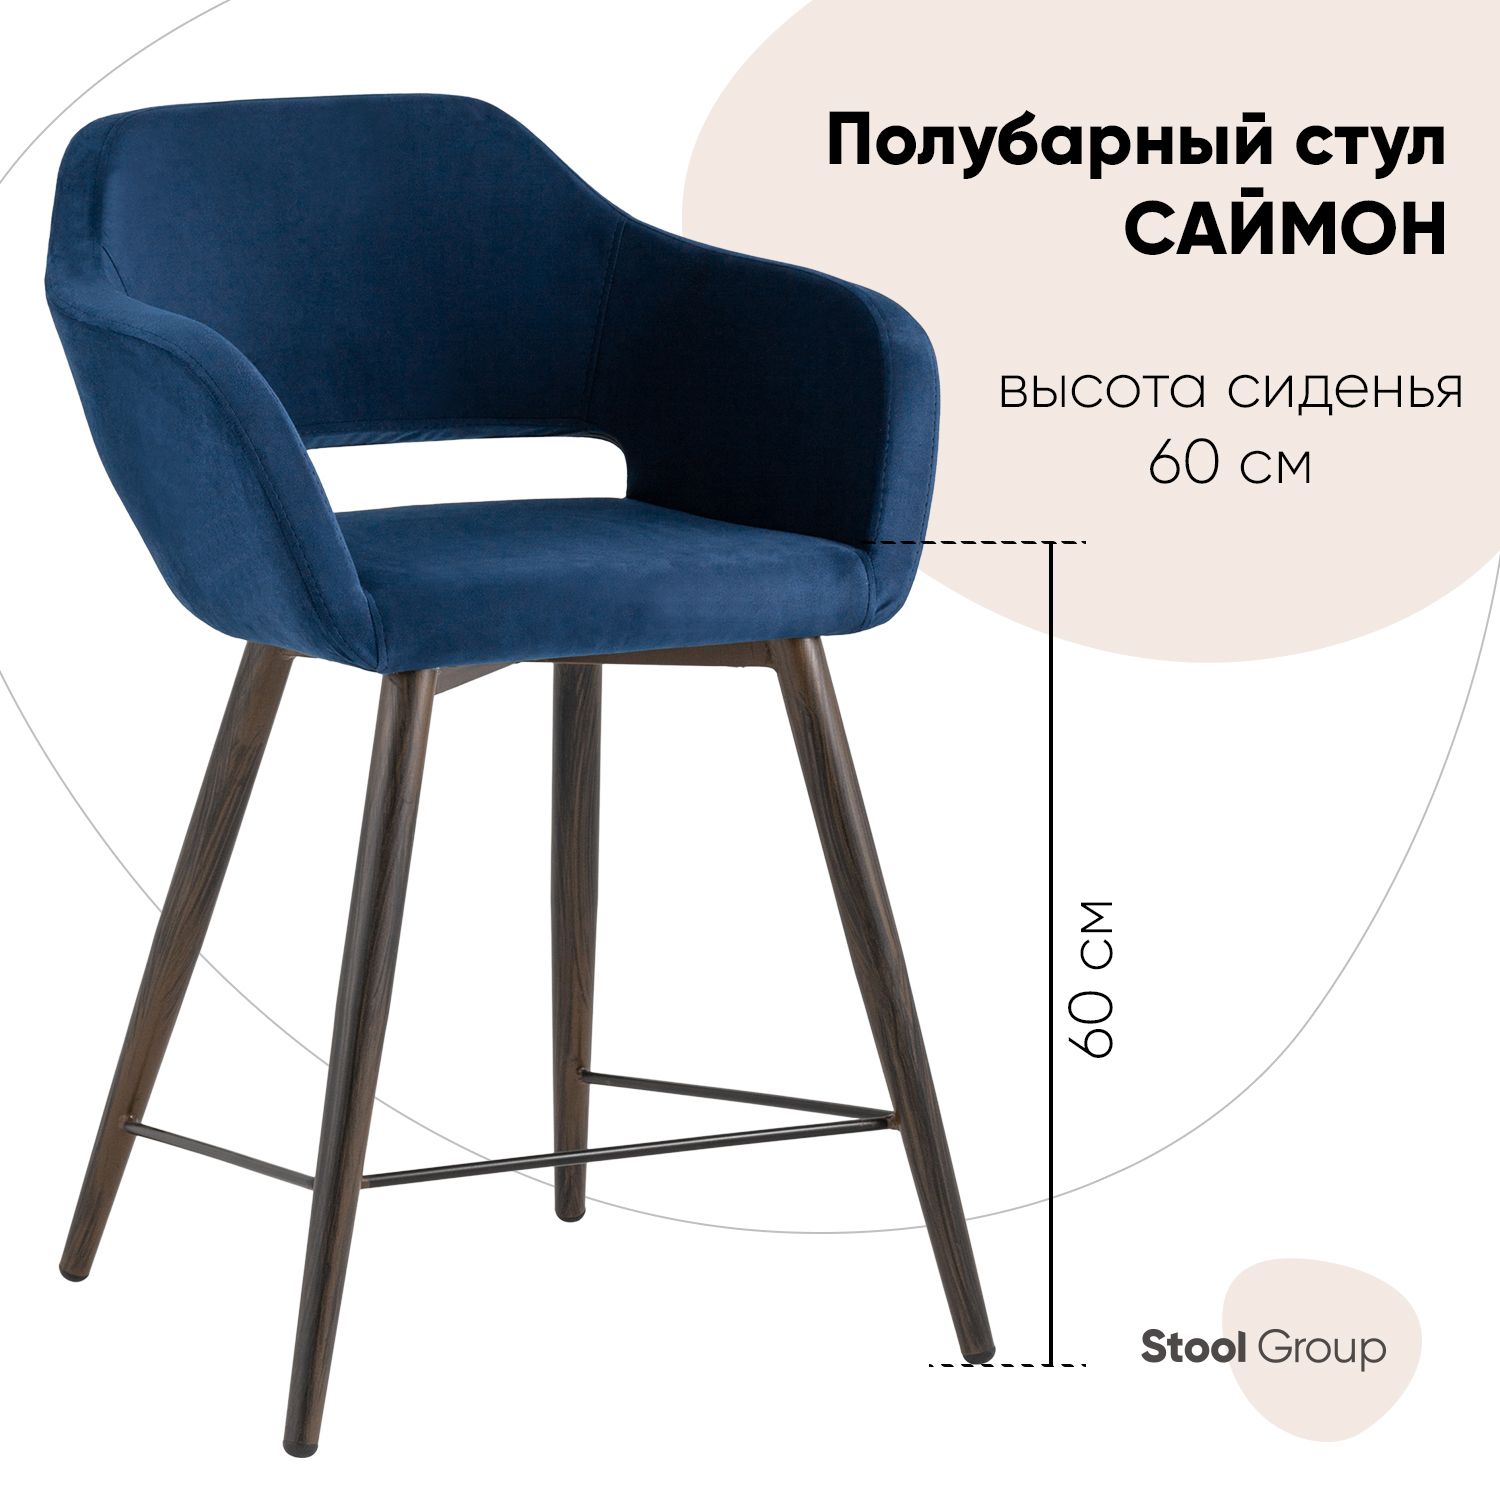 фото Полубарный стул stool group саймон fb-saimon-plb-awd-vl-26, темно-синий